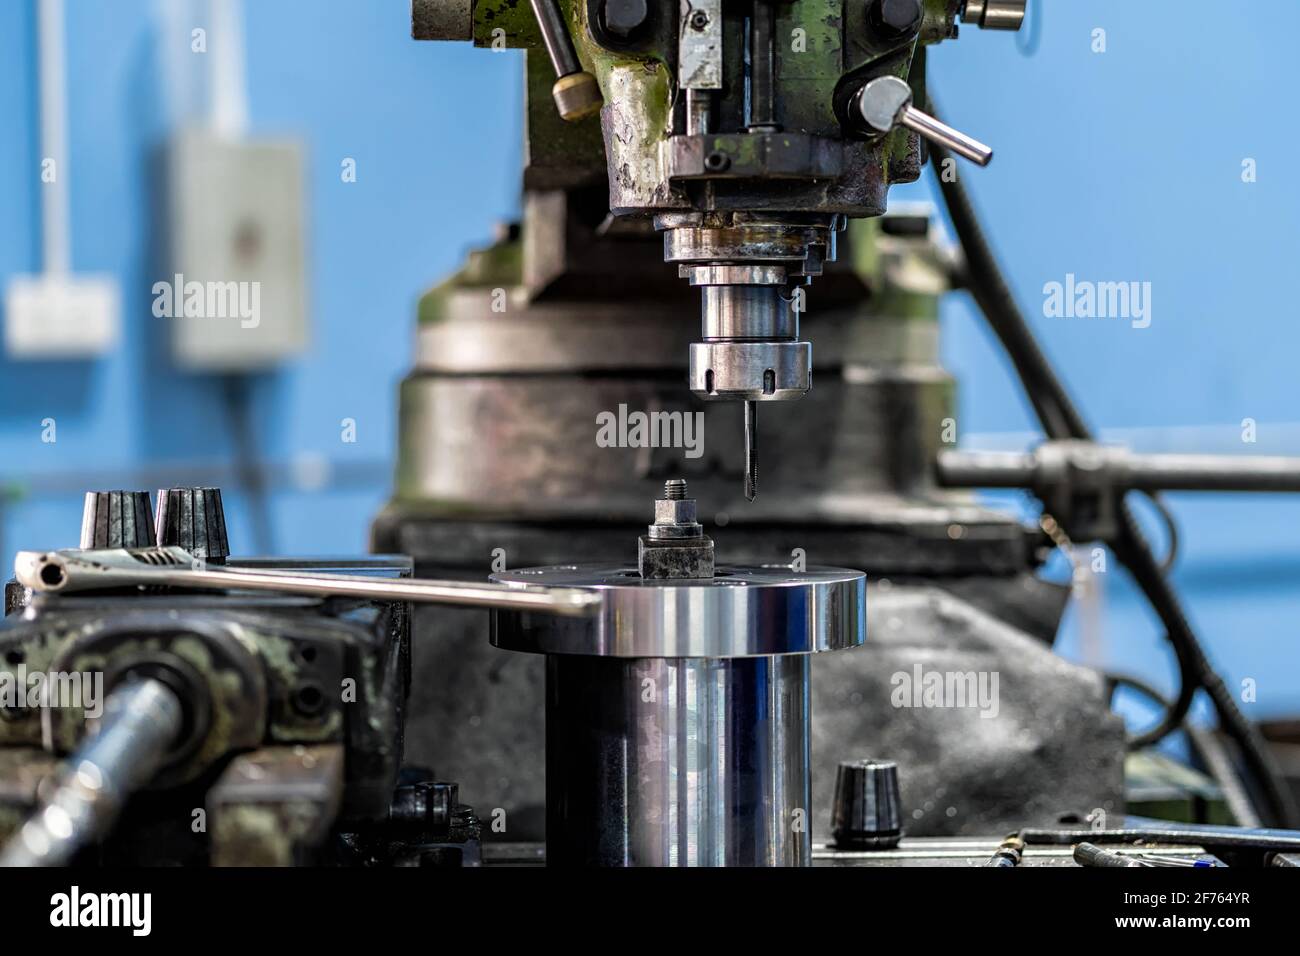 Professionelle Fräsmaschine in metallverarbeitenden Fabrik, Drehmaschine metallverarbeitende Industrie Konzept Stockfoto